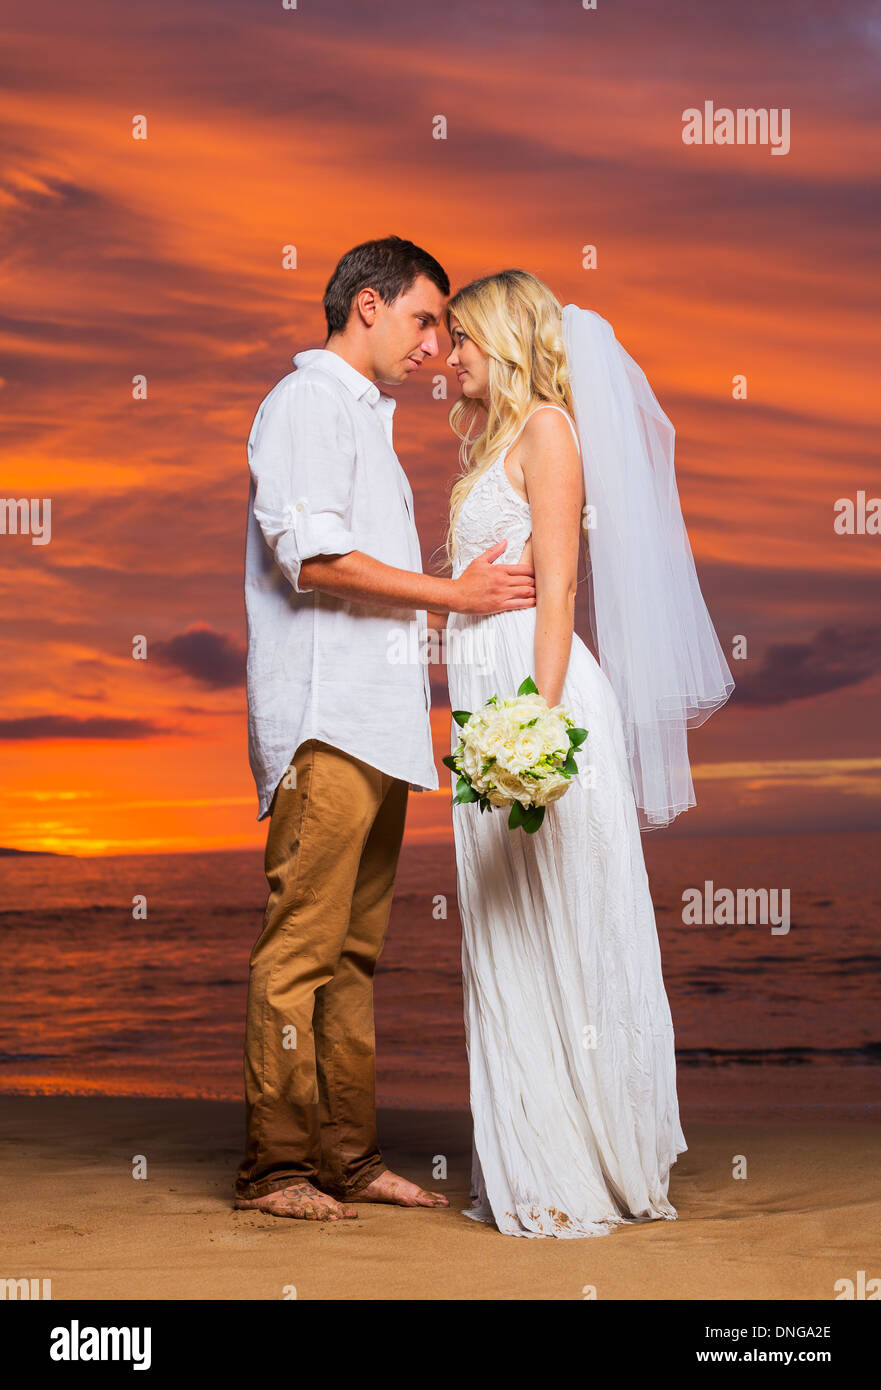 Appena una coppia sposata sulla spiaggia tropicale al tramonto, intimo momento amorevole a Wedding Foto Stock